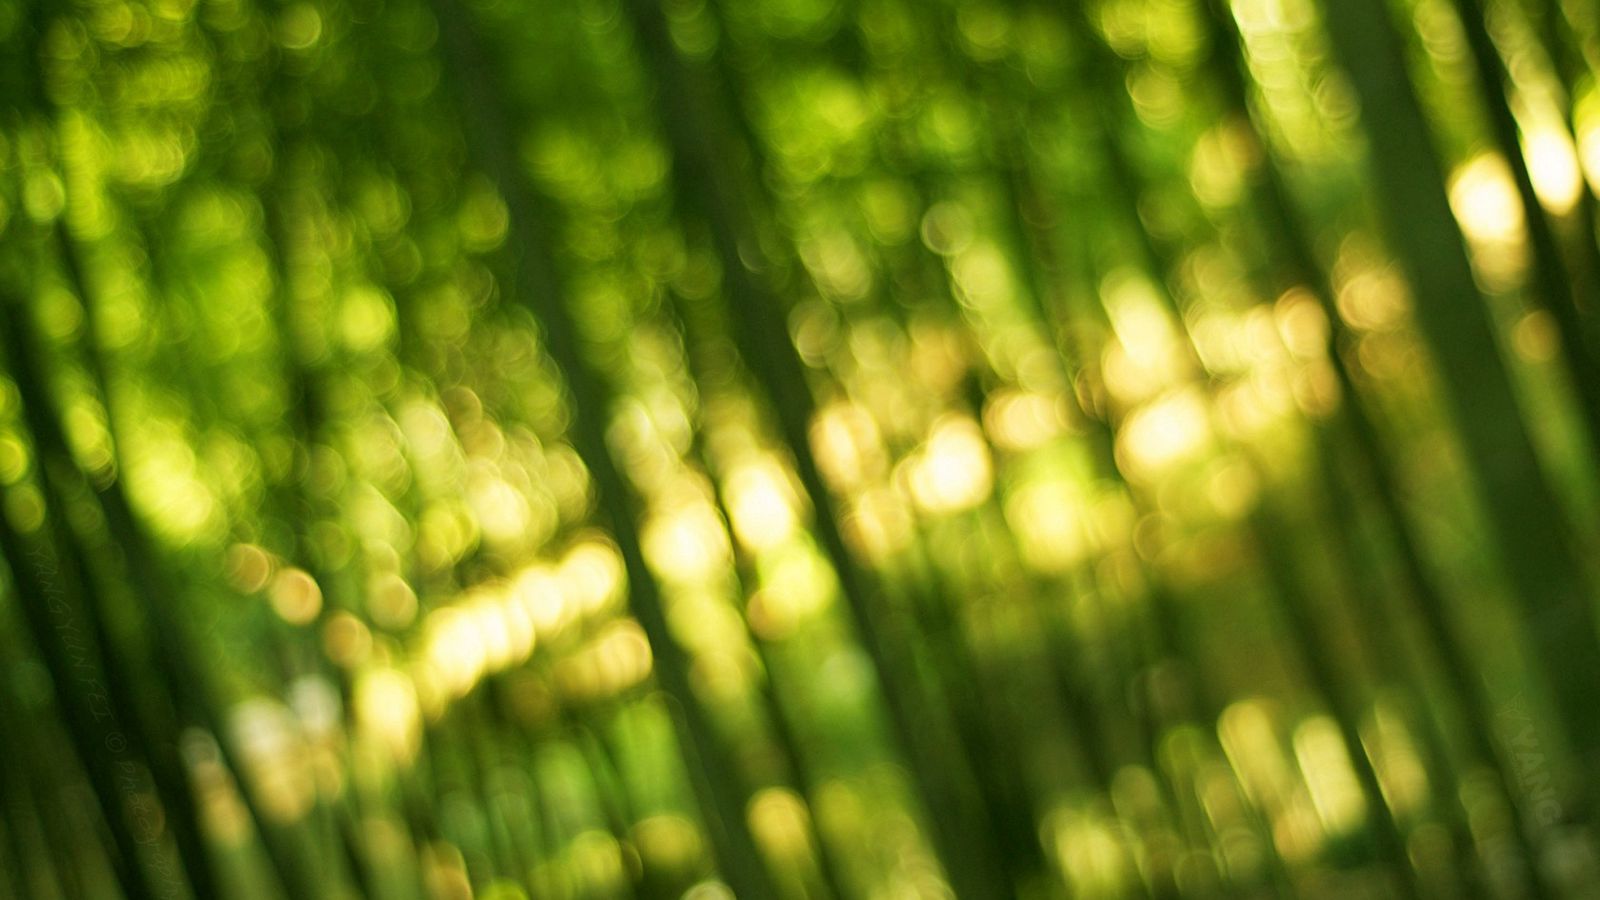 Download wallpaper 1600x900 bamboo, green, light, bokeh widescreen 16:9 HD background